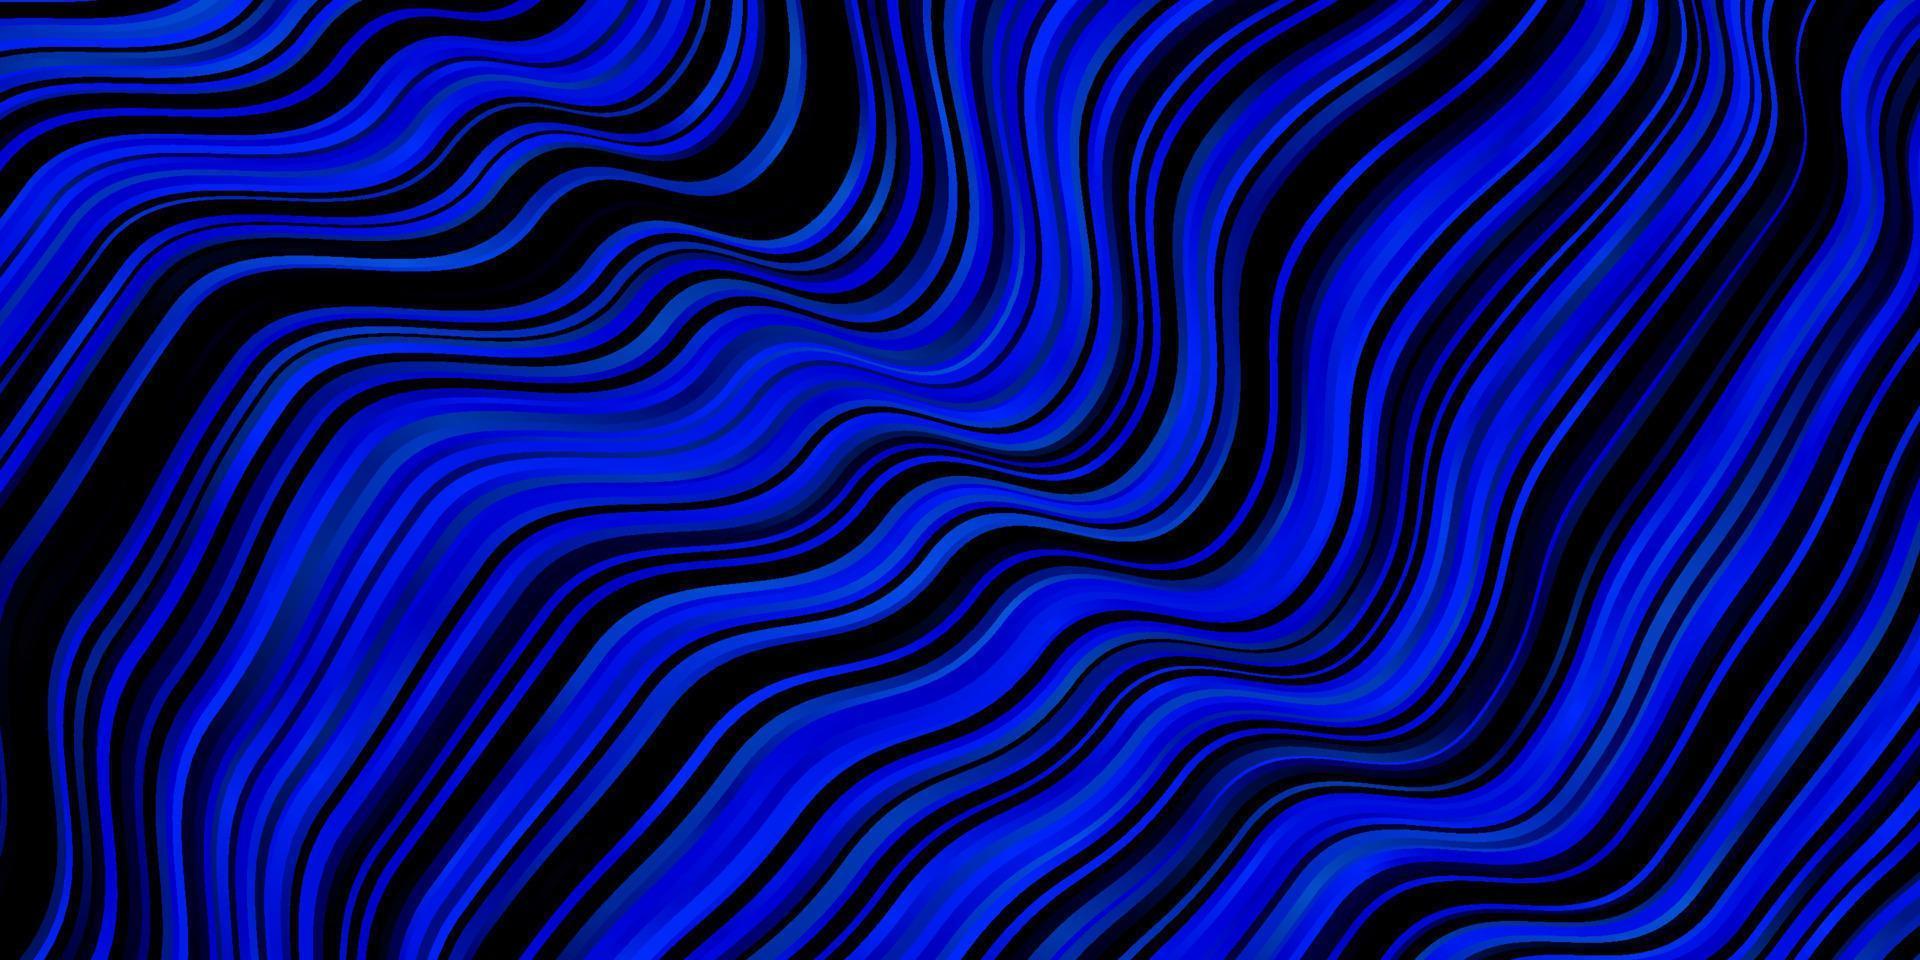 fundo vector azul escuro com linhas irônicas.